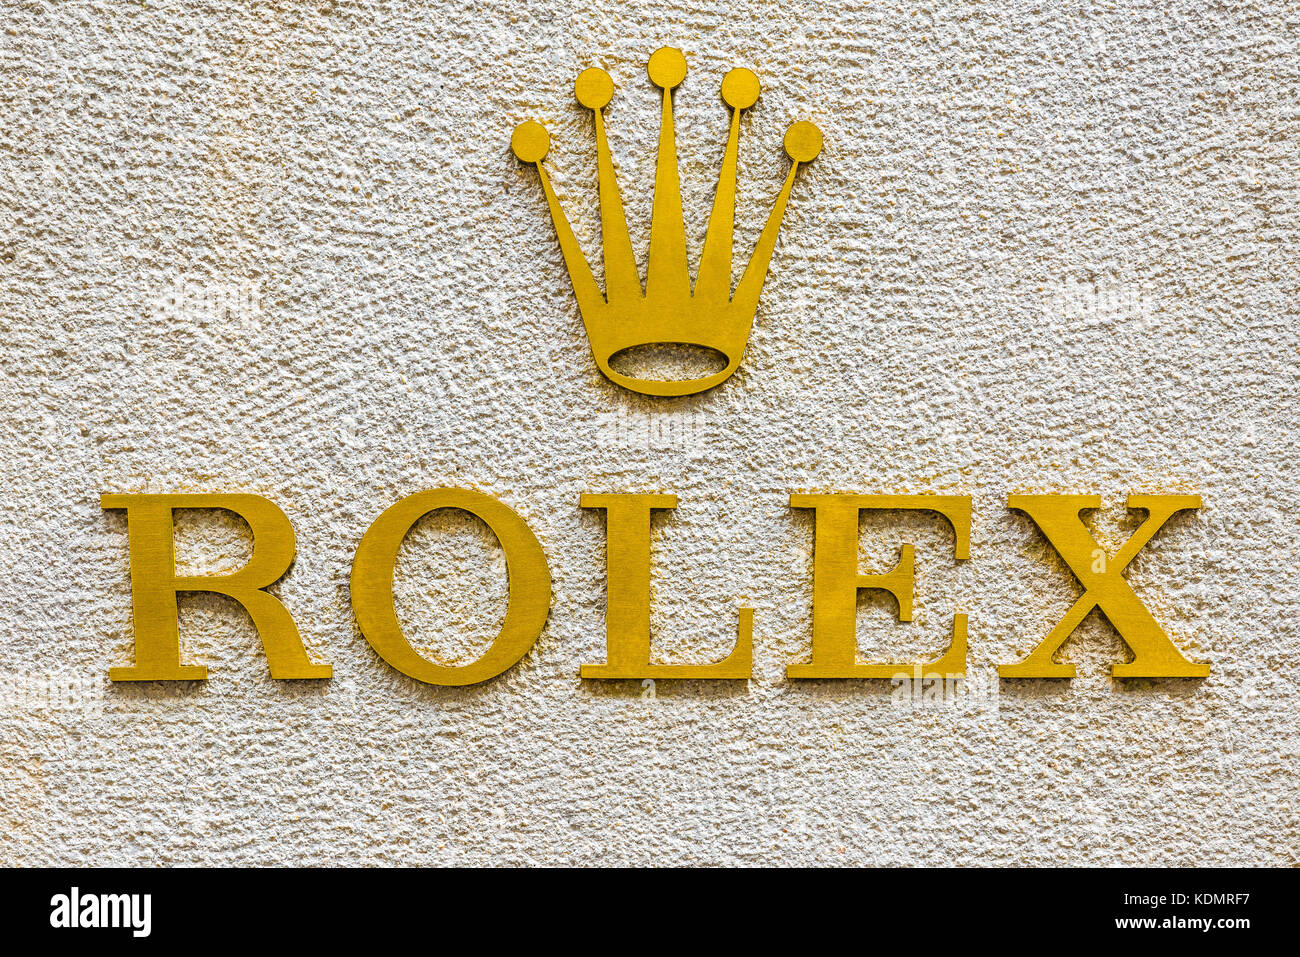 Rolex logo fotografías e imágenes de alta resolución - Alamy